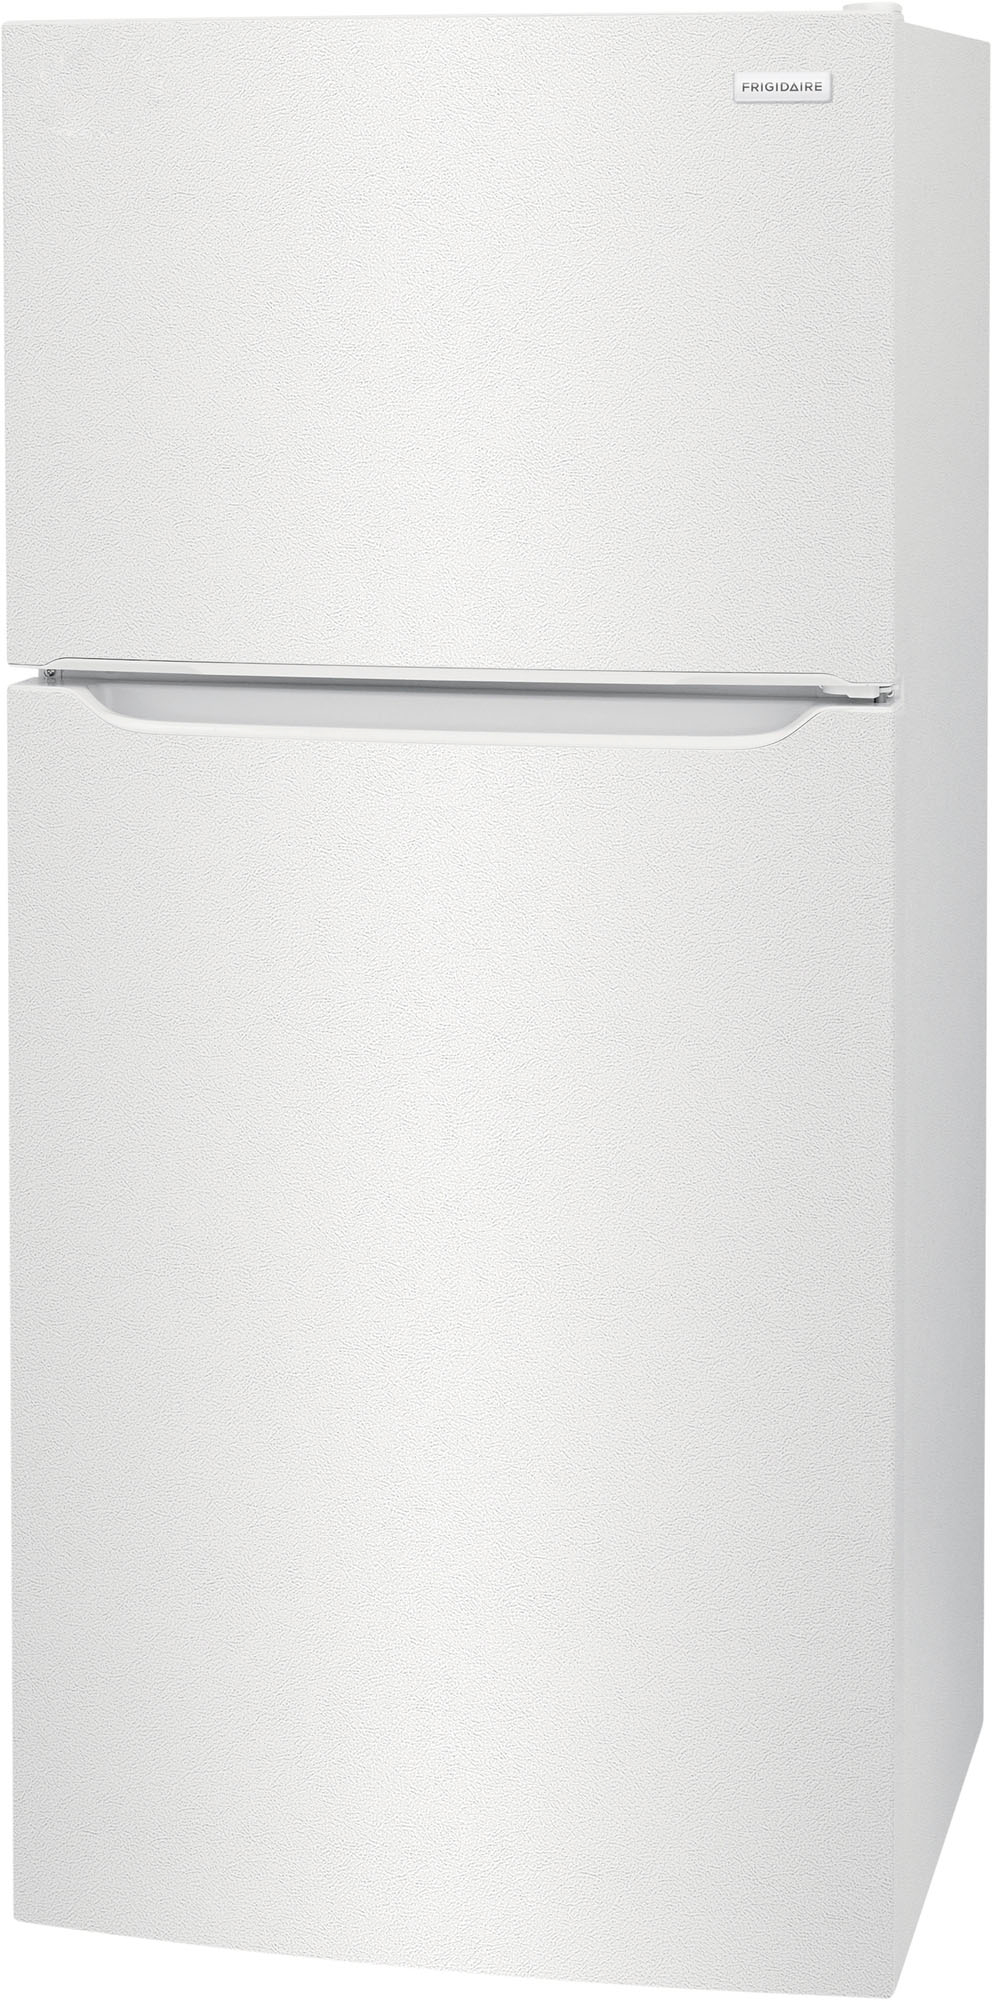 Angle View: Frigidaire - 18.3 Cu. Ft. Top Freezer Refrigerator - White